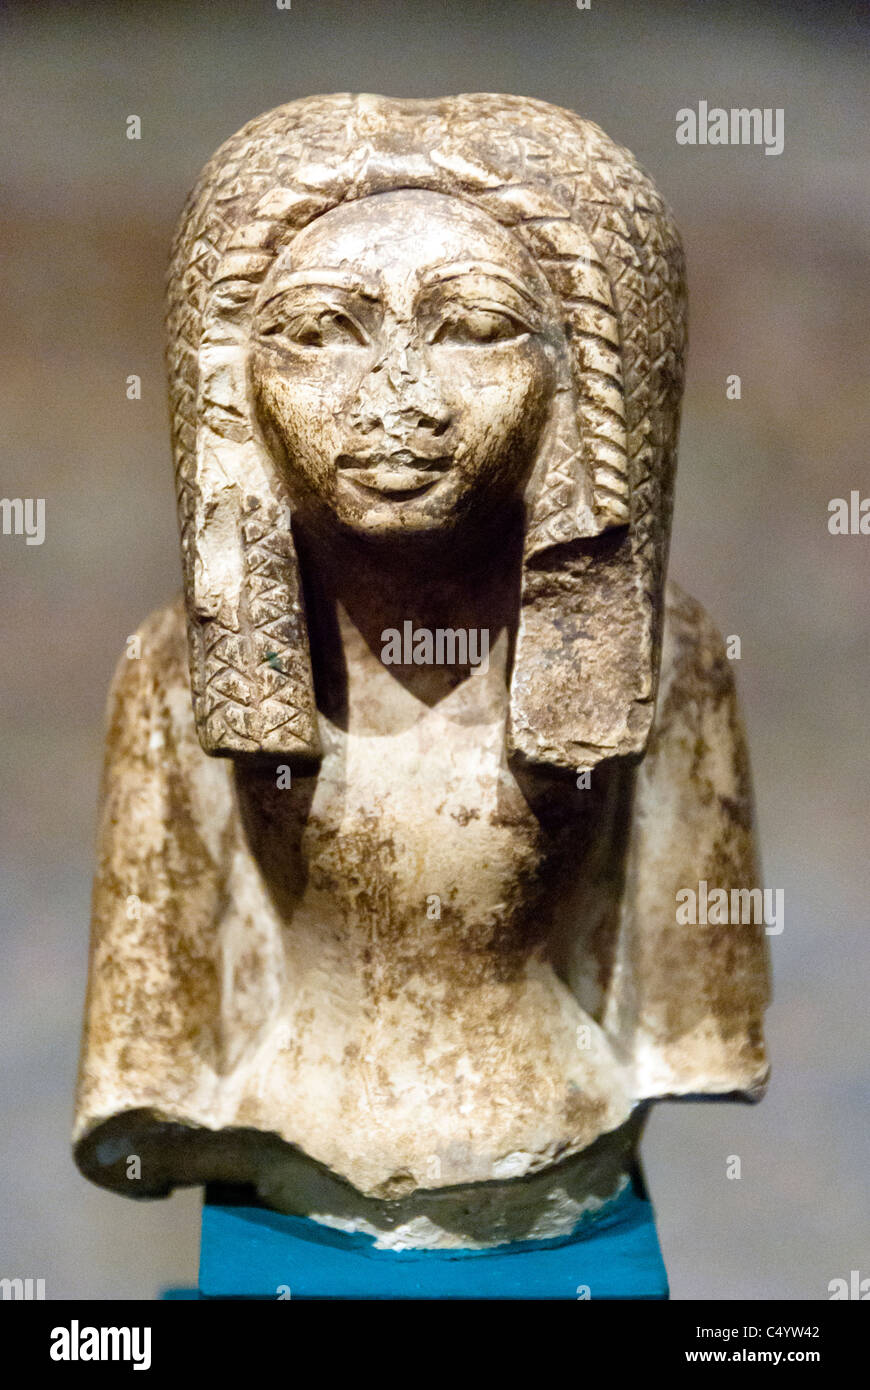 Oberteil einer Statue einer Frau. Die schwere Perücke, die sie trägt ist typisch für das neue Reich. Kalkstein 18. Dynastie - Insel Elephantine. Stockfoto